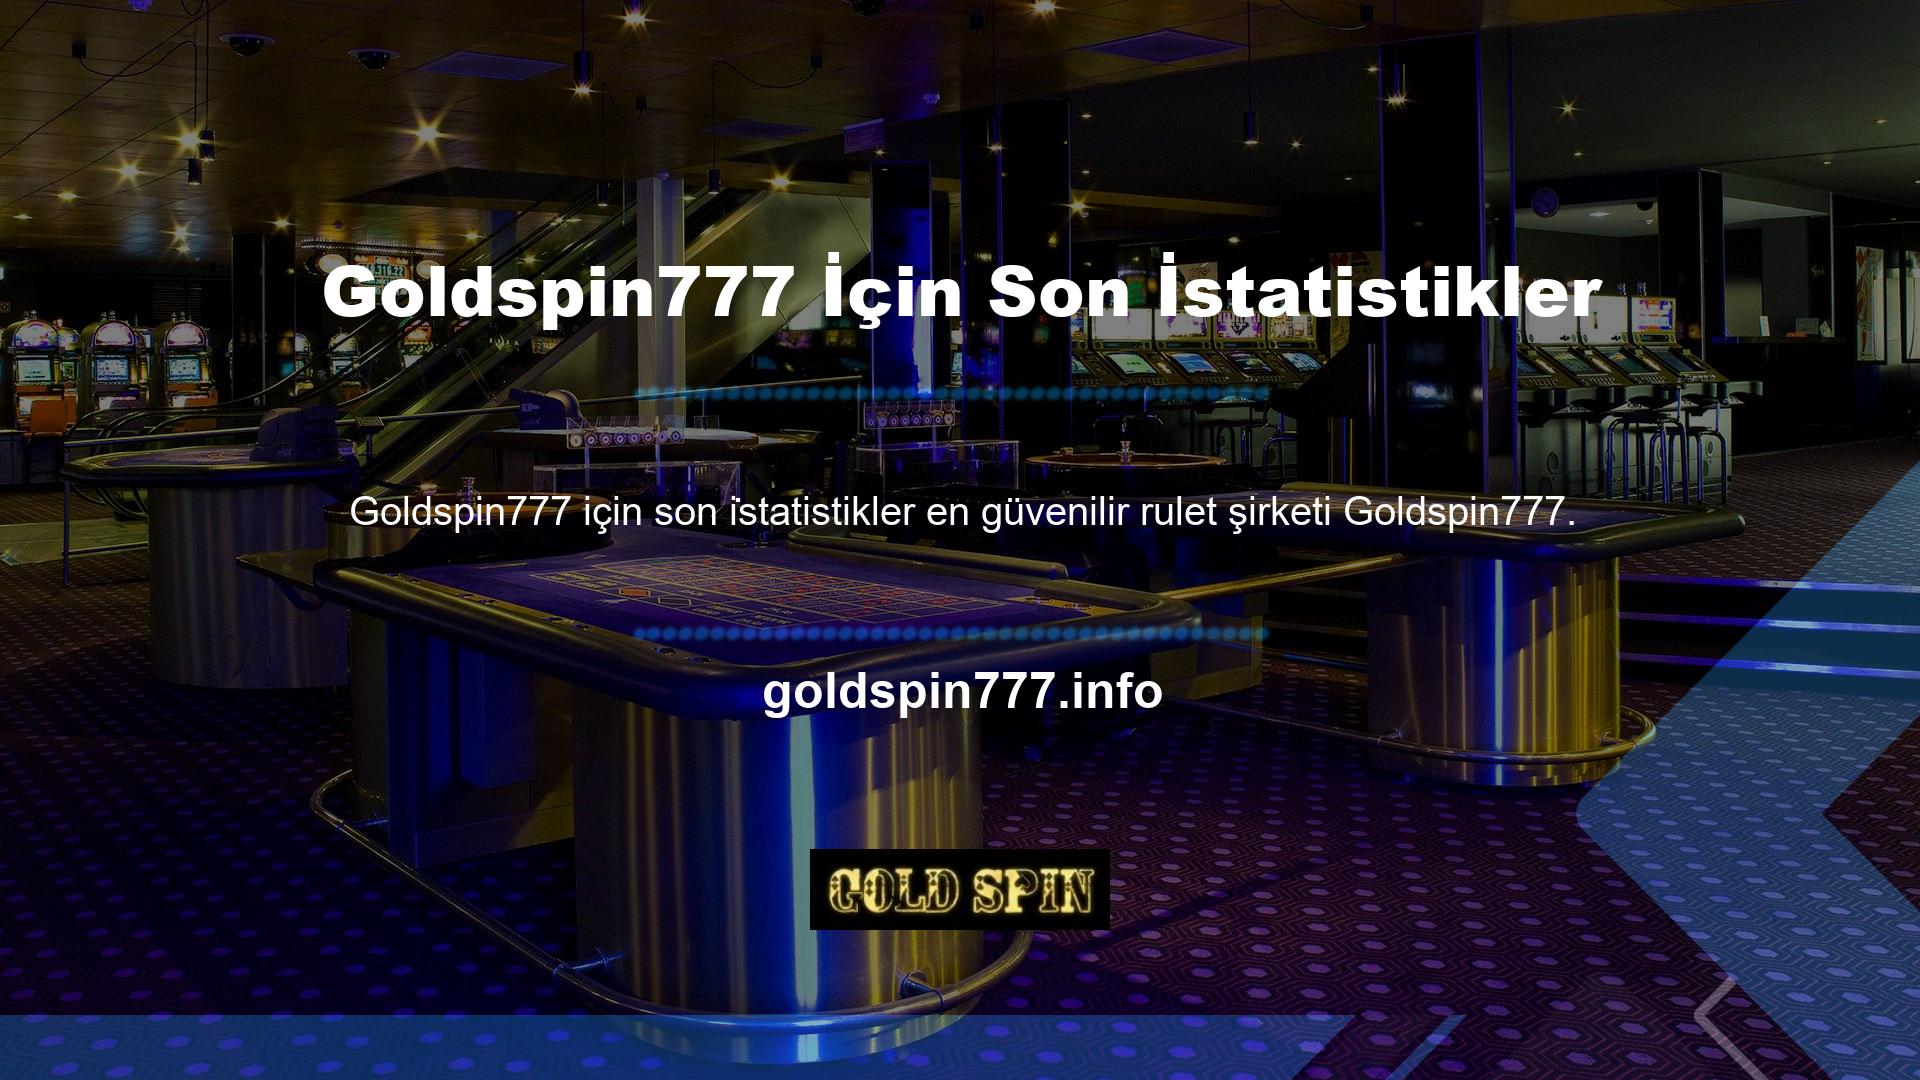 Goldspin777, yerel poker oyunuyla ilgilenen insanları arayan ve çeken böyle bir bahisçidir